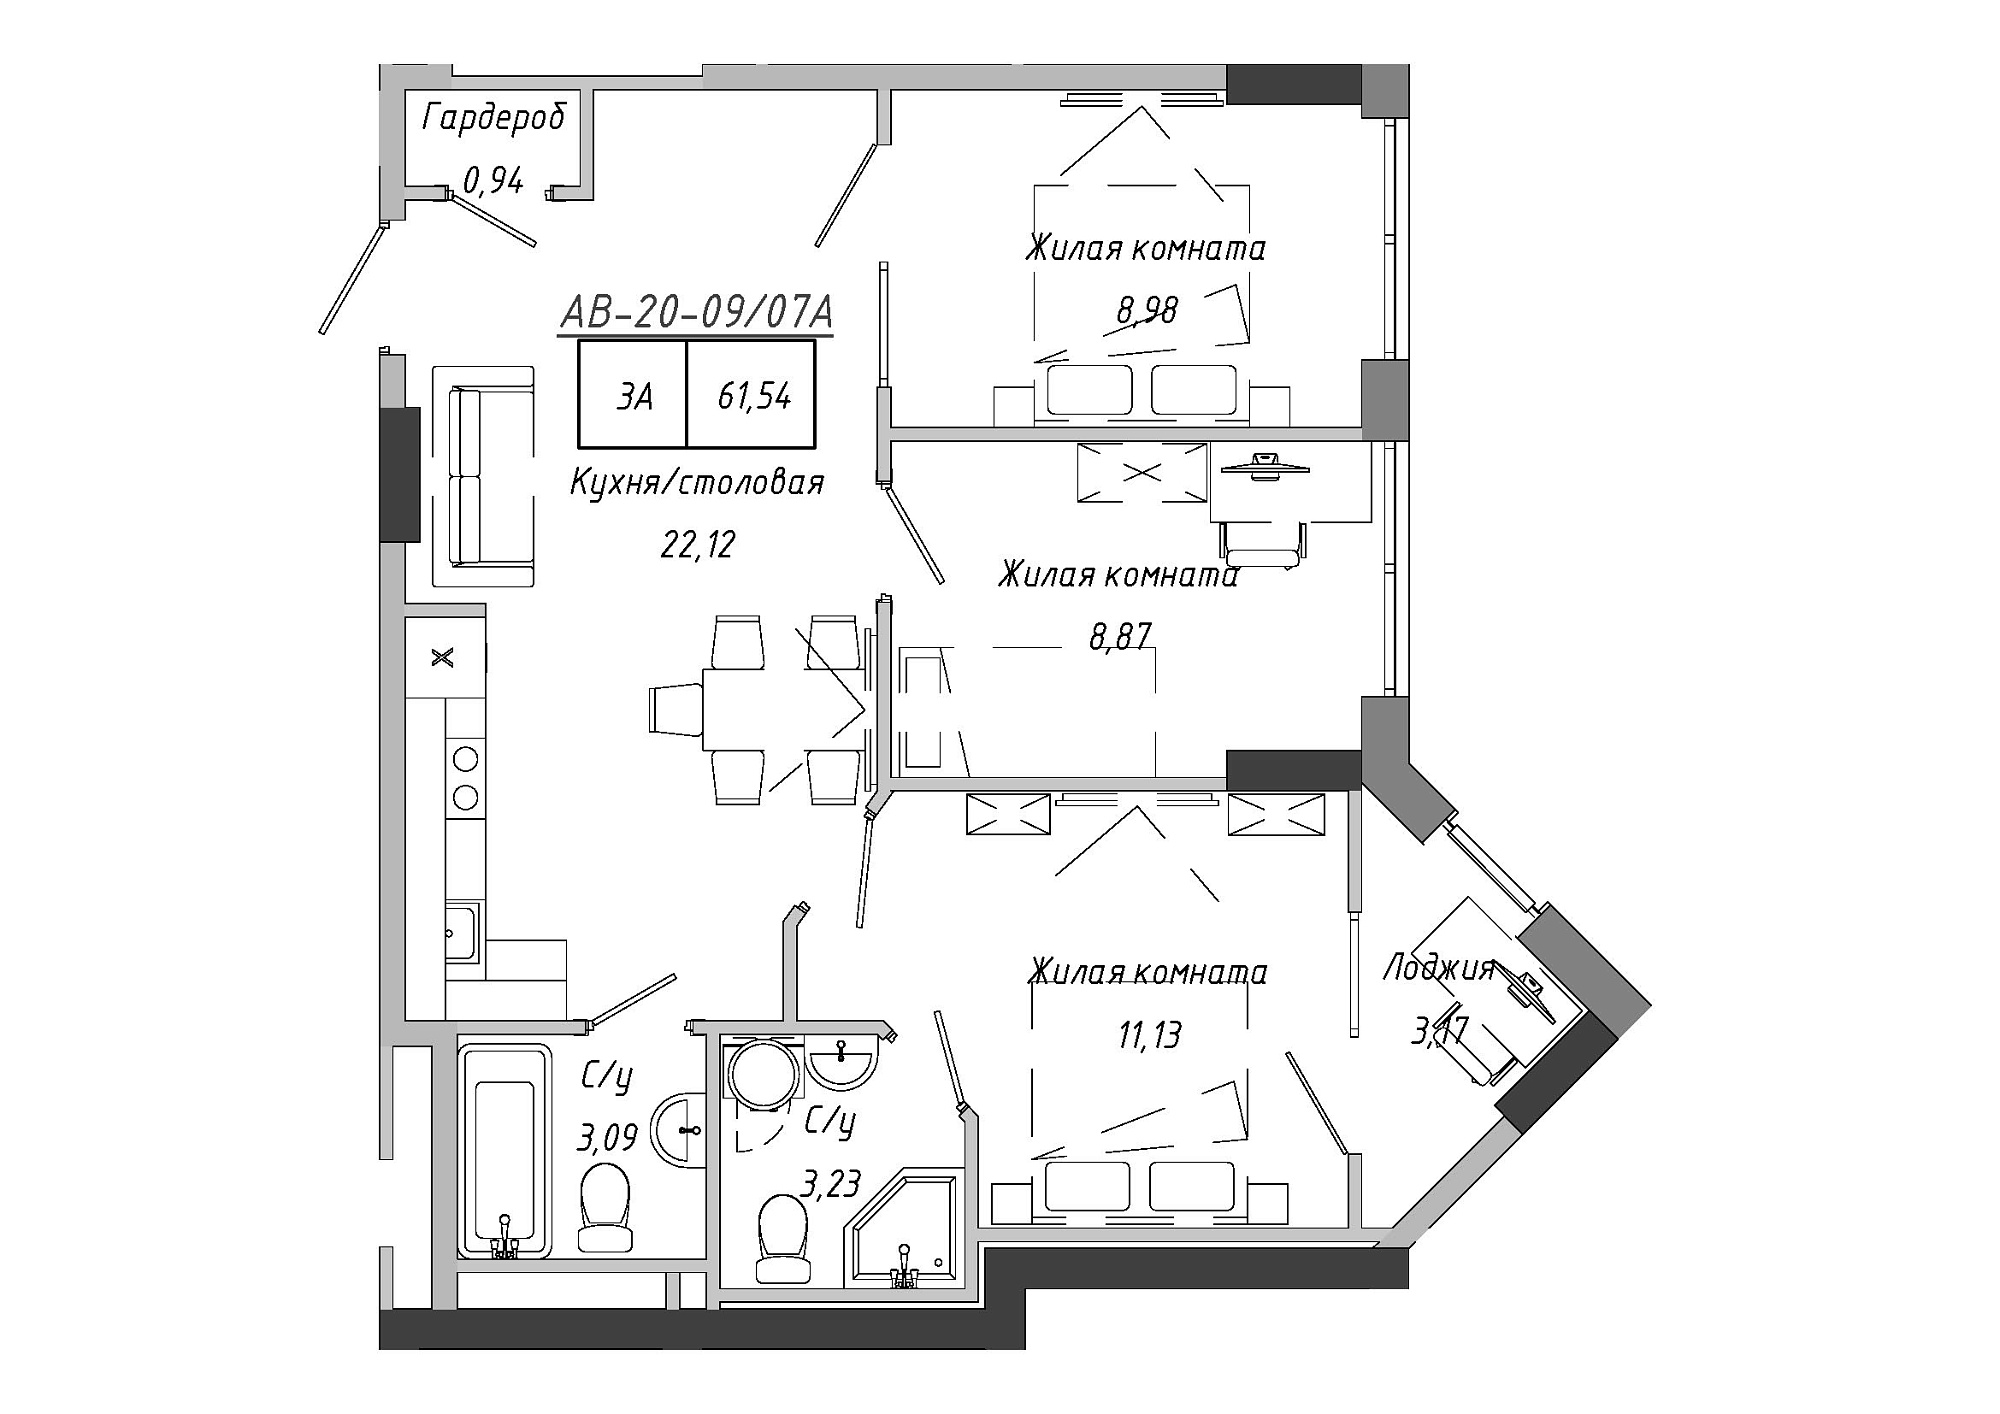 Планировка 3-к квартира площей 62.67м2, AB-20-09/0007а.